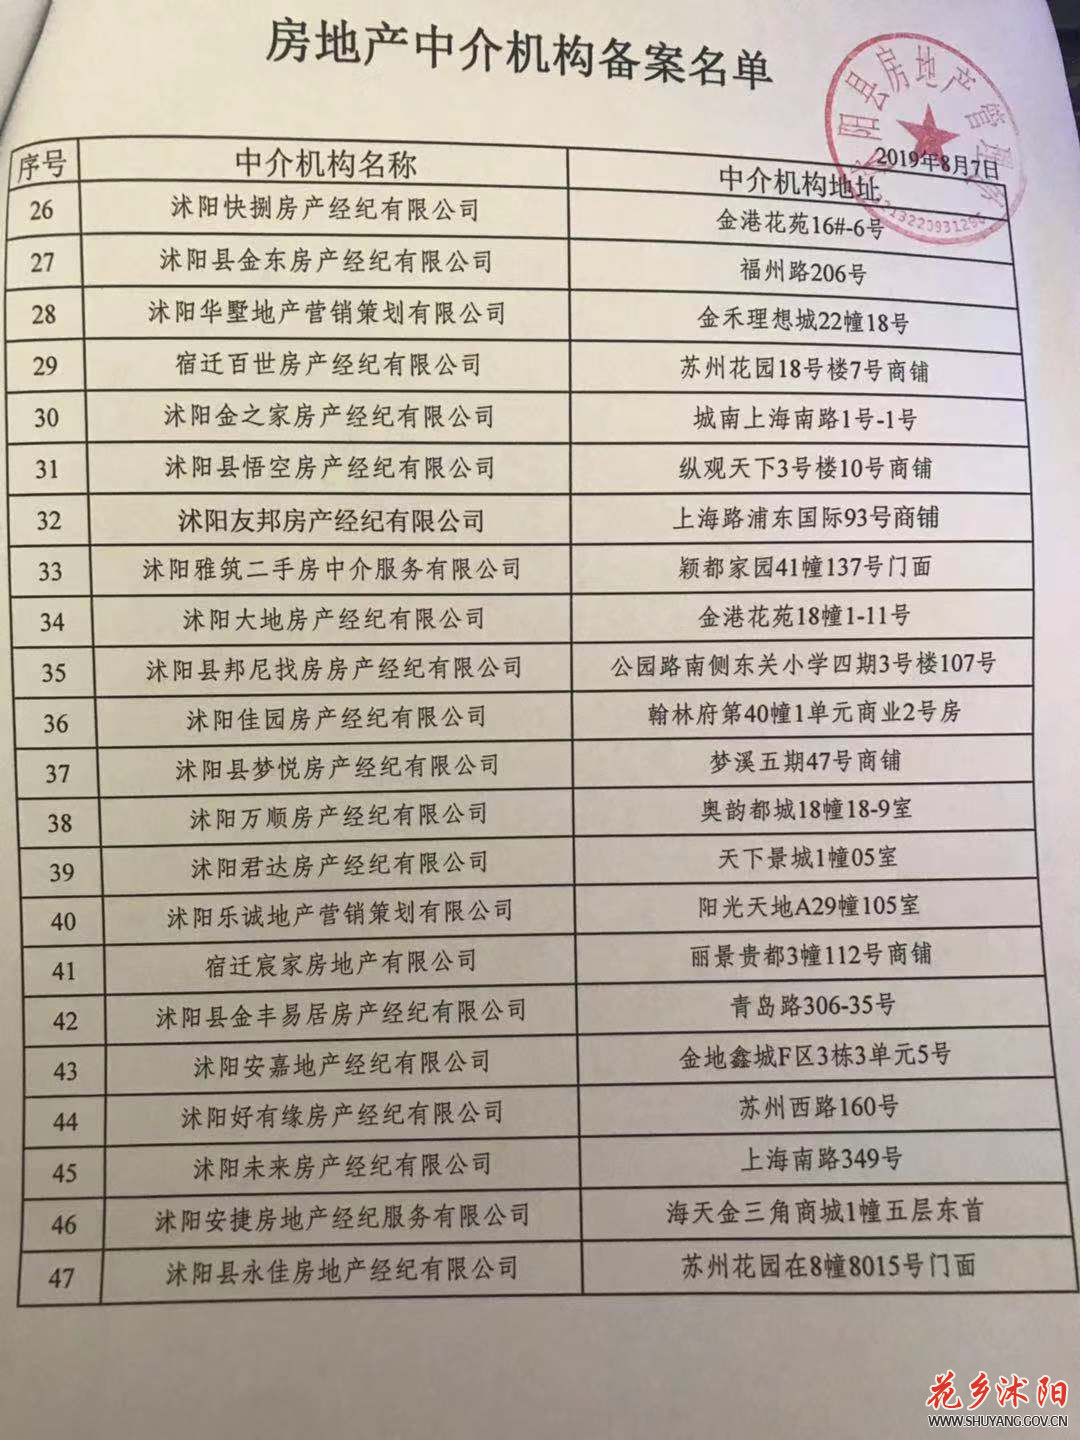 沭阳县房地产中介机构备案名单公示